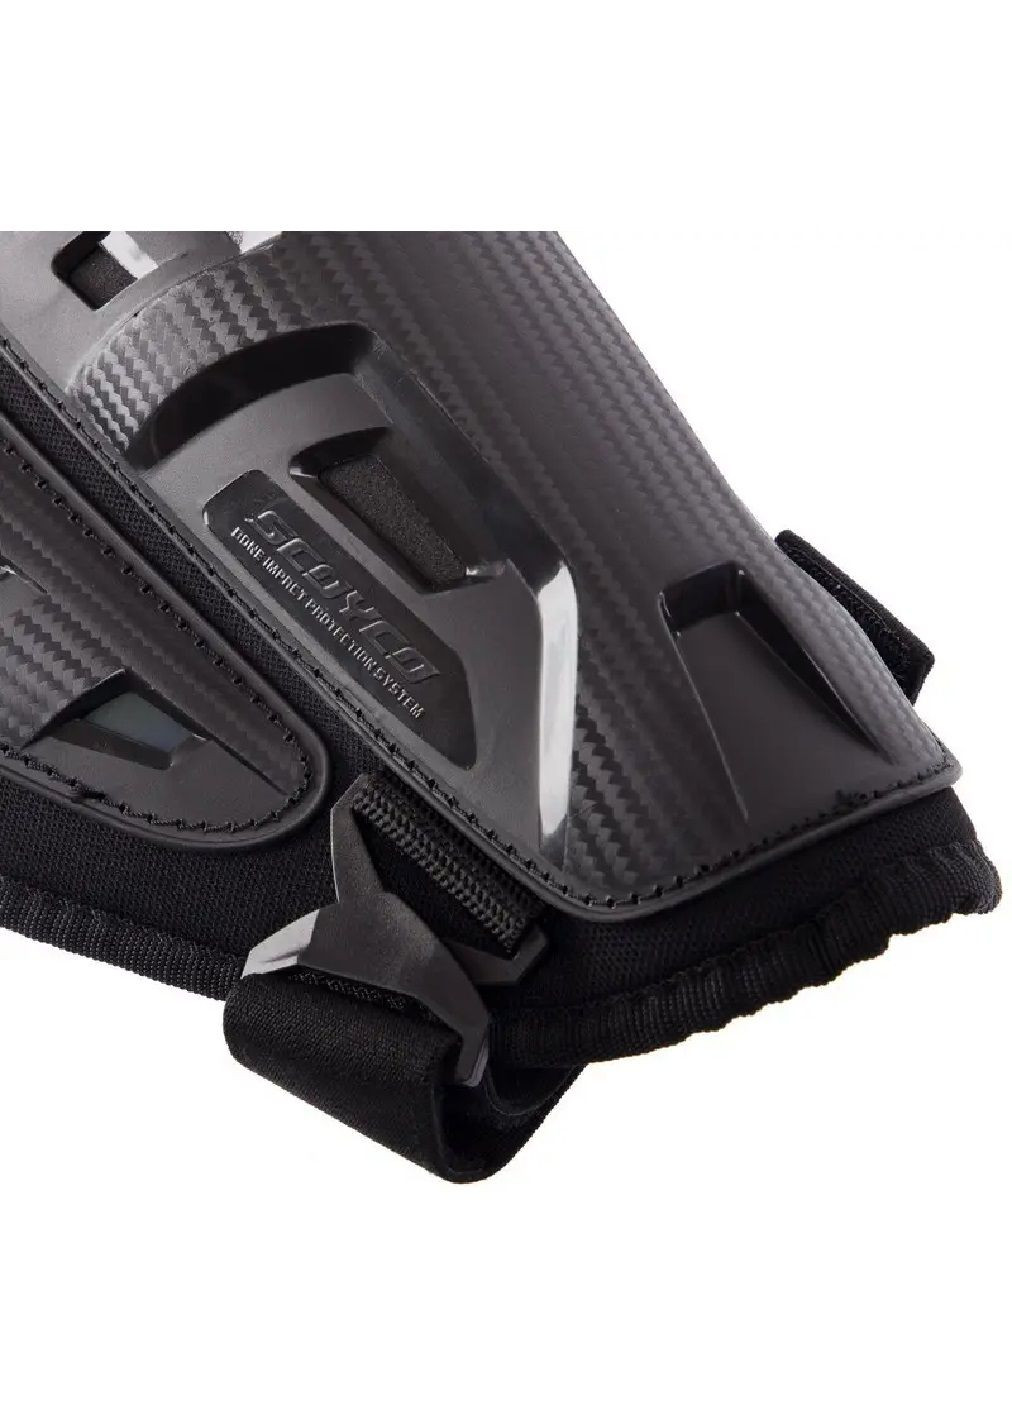 Комплект набор мотонаколенники налокотники защитные с ремнями клипсами для защиты от травм мото защита (476507-Prob) Черные Unbranded (283250529)